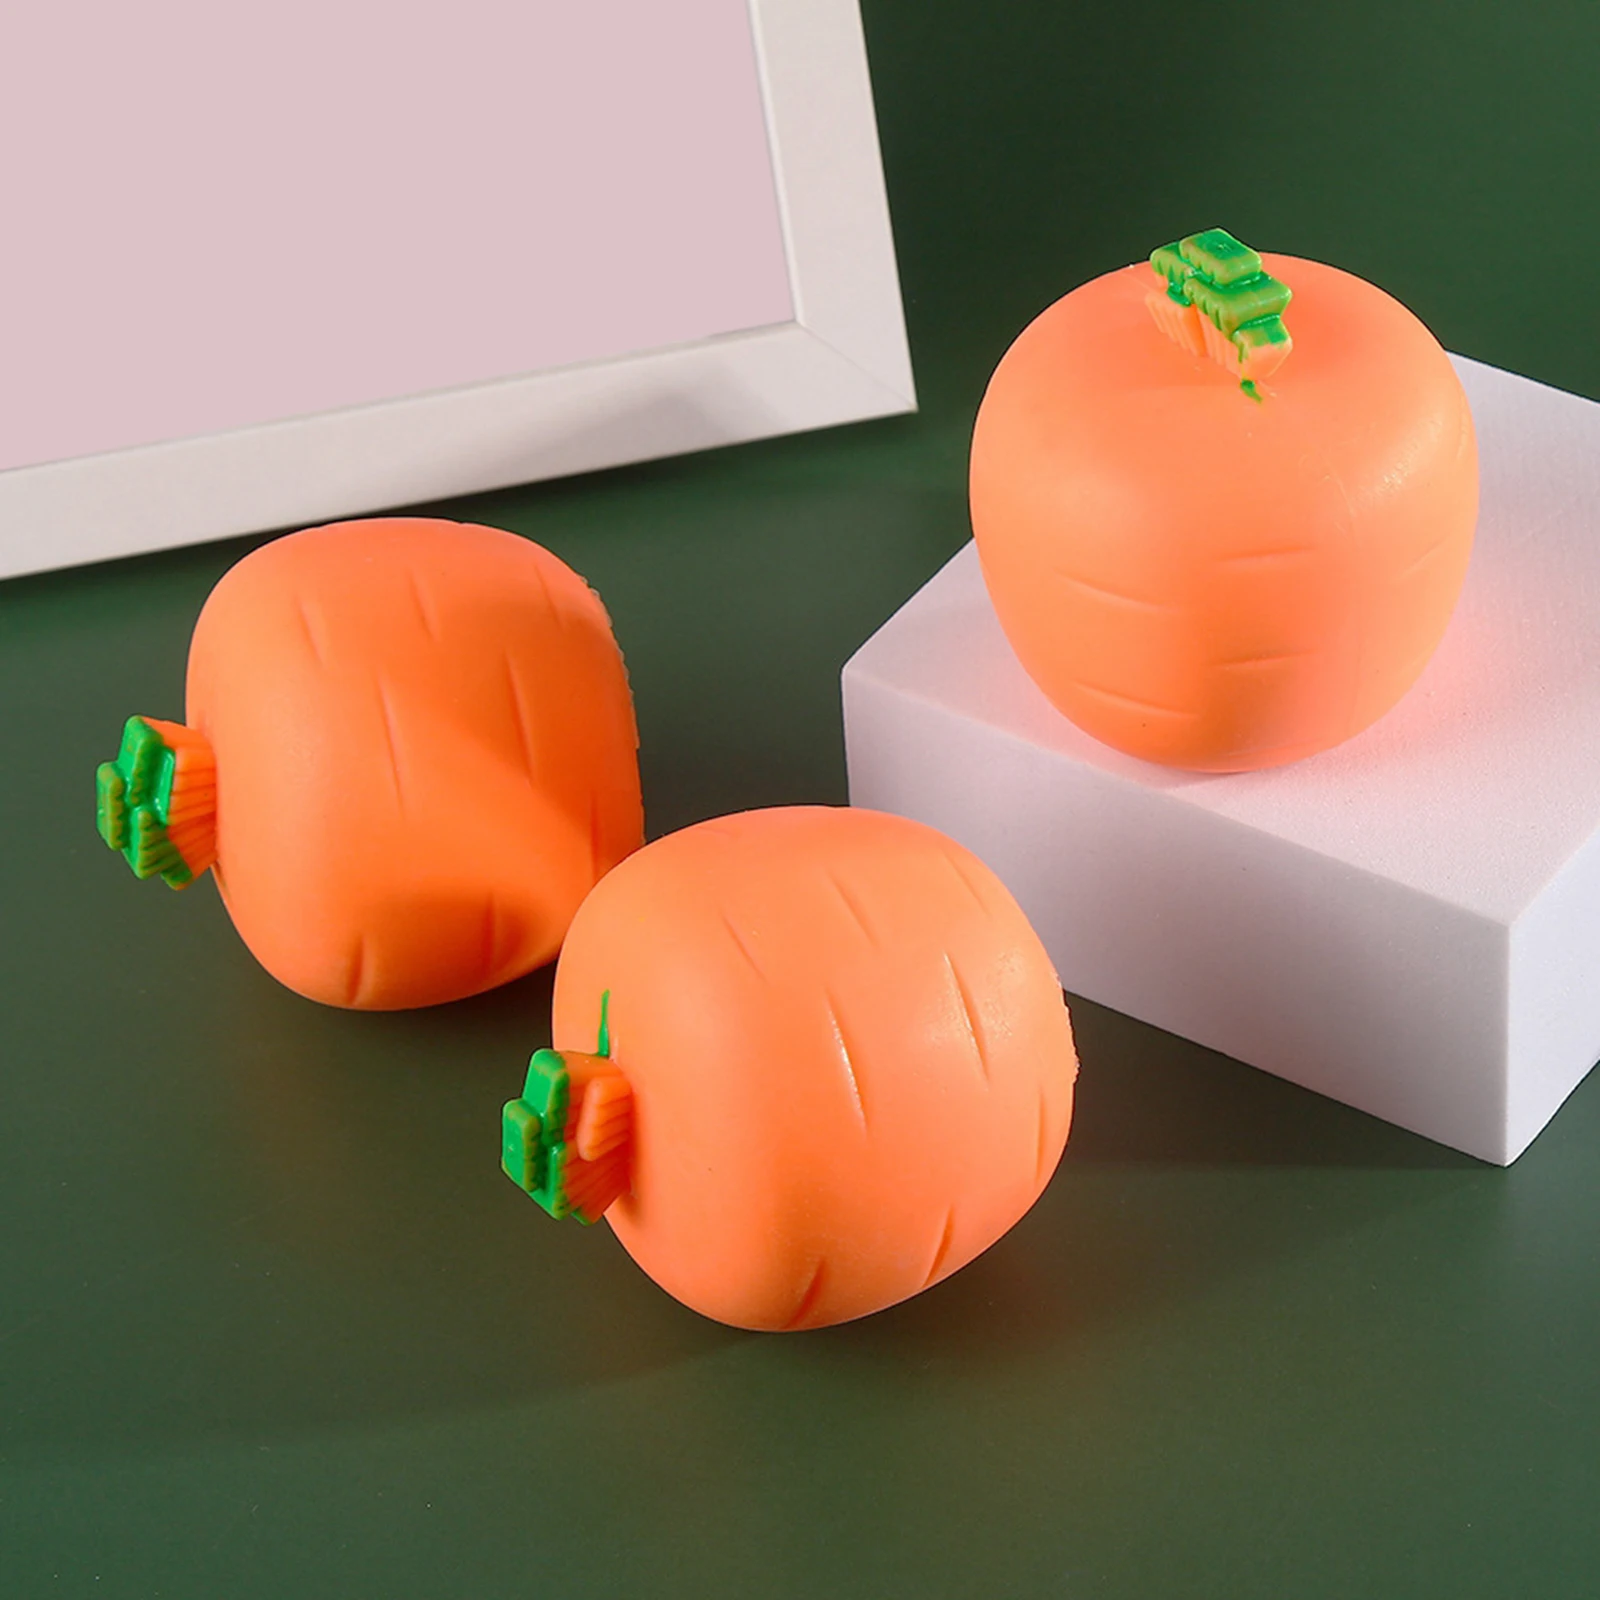 Cute Carrot and Rabbit Shape Fidget Toys para crianças e adultos, Funny Squeeze Toys, Brinquedos sensoriais de descompressão, Tédio Stress Relief